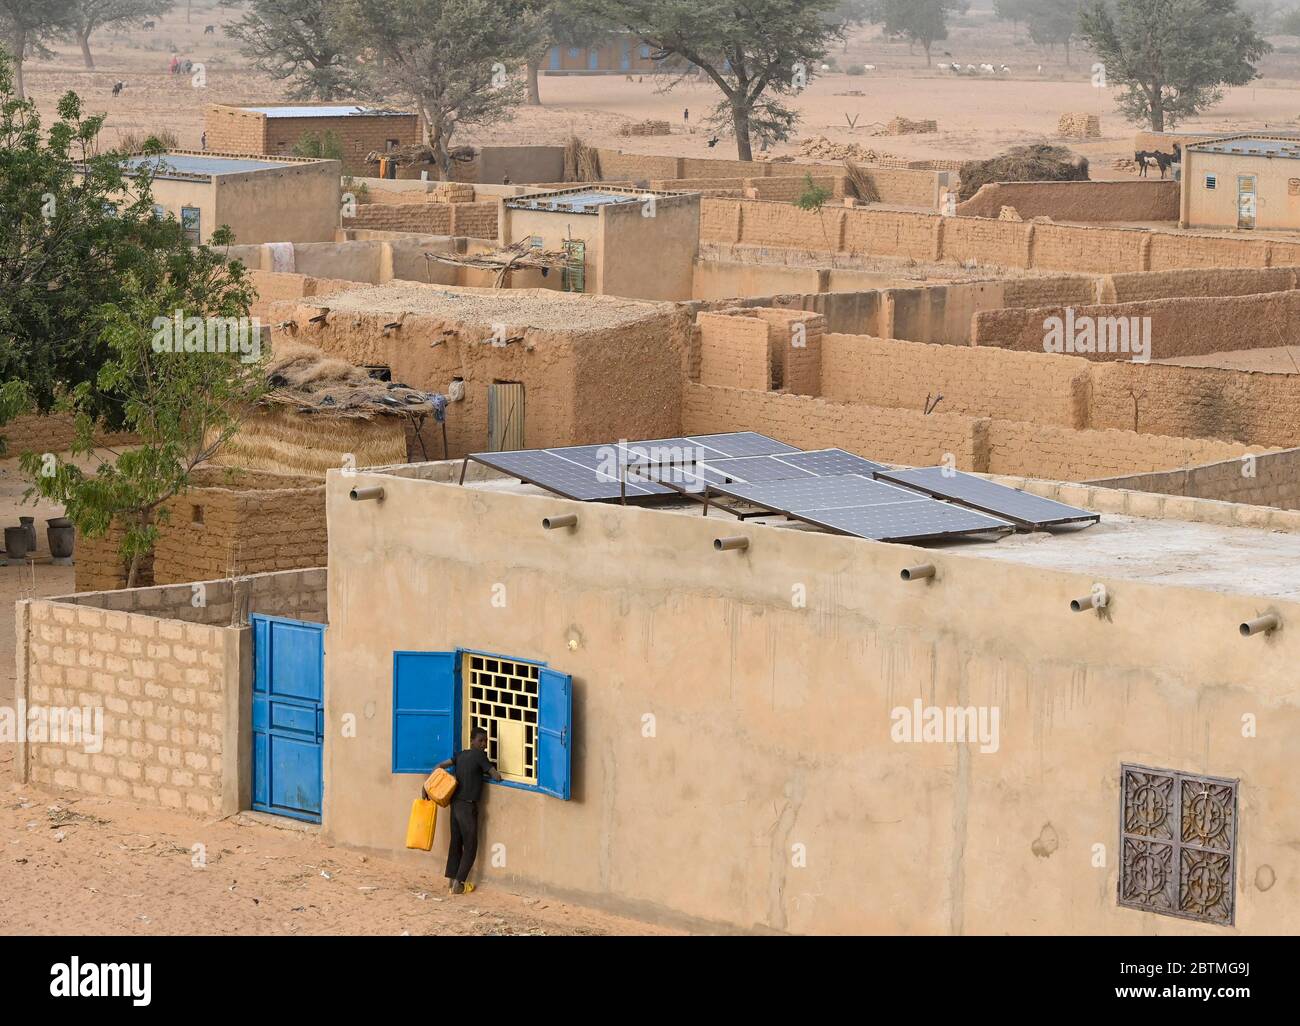 NIGER, Maradi, Dorf Dan Bako, Lehmhäuser und Zementbau mit Photovoltaik-Solaranlage / Haus aus Lehm und Zement mit Solar Home System Stockfoto